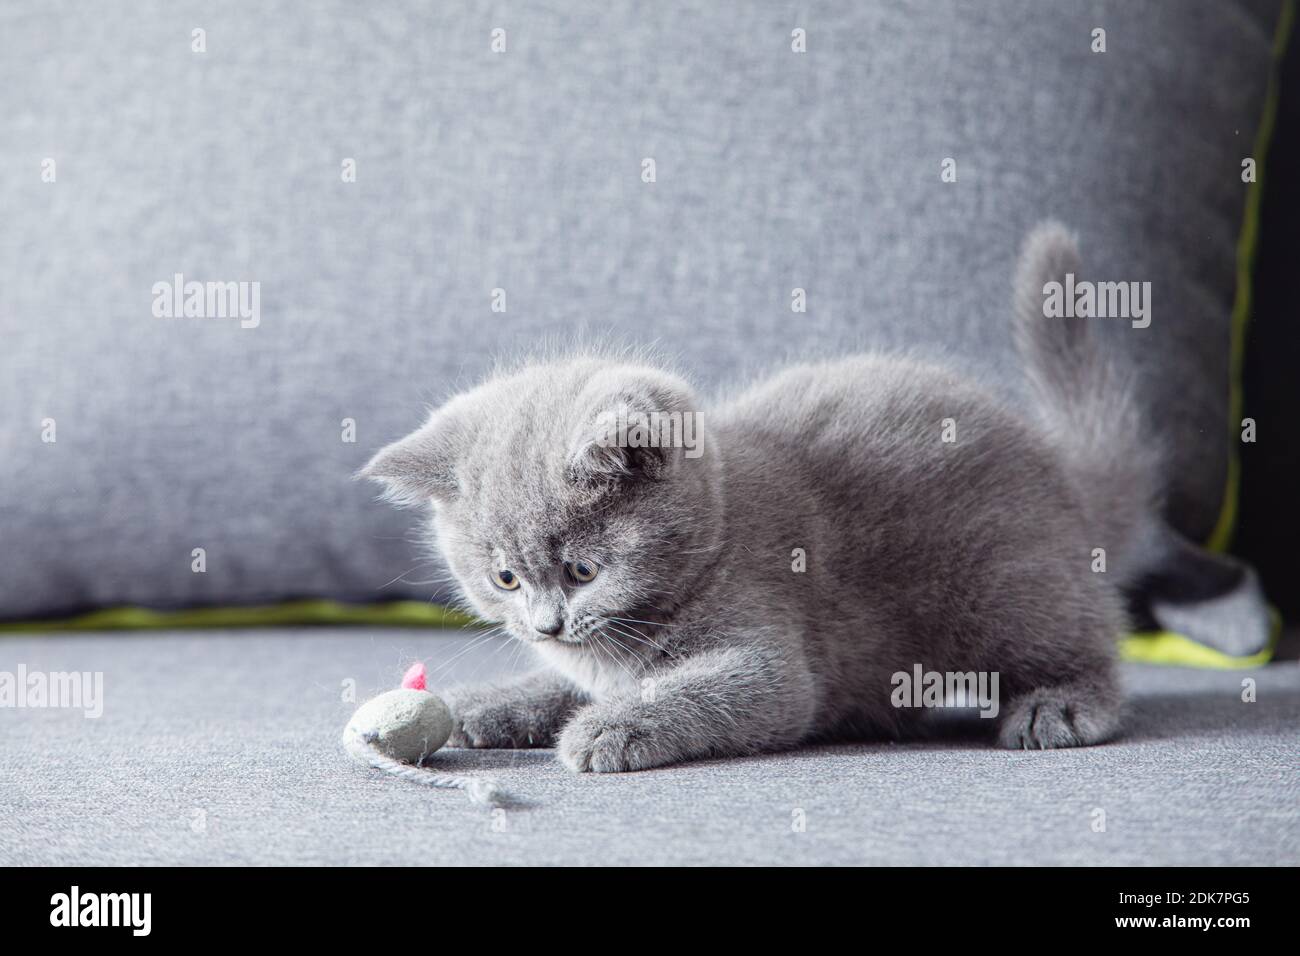 El lindo gatito mira curiosamente a un ratón de juguete Foto de stock